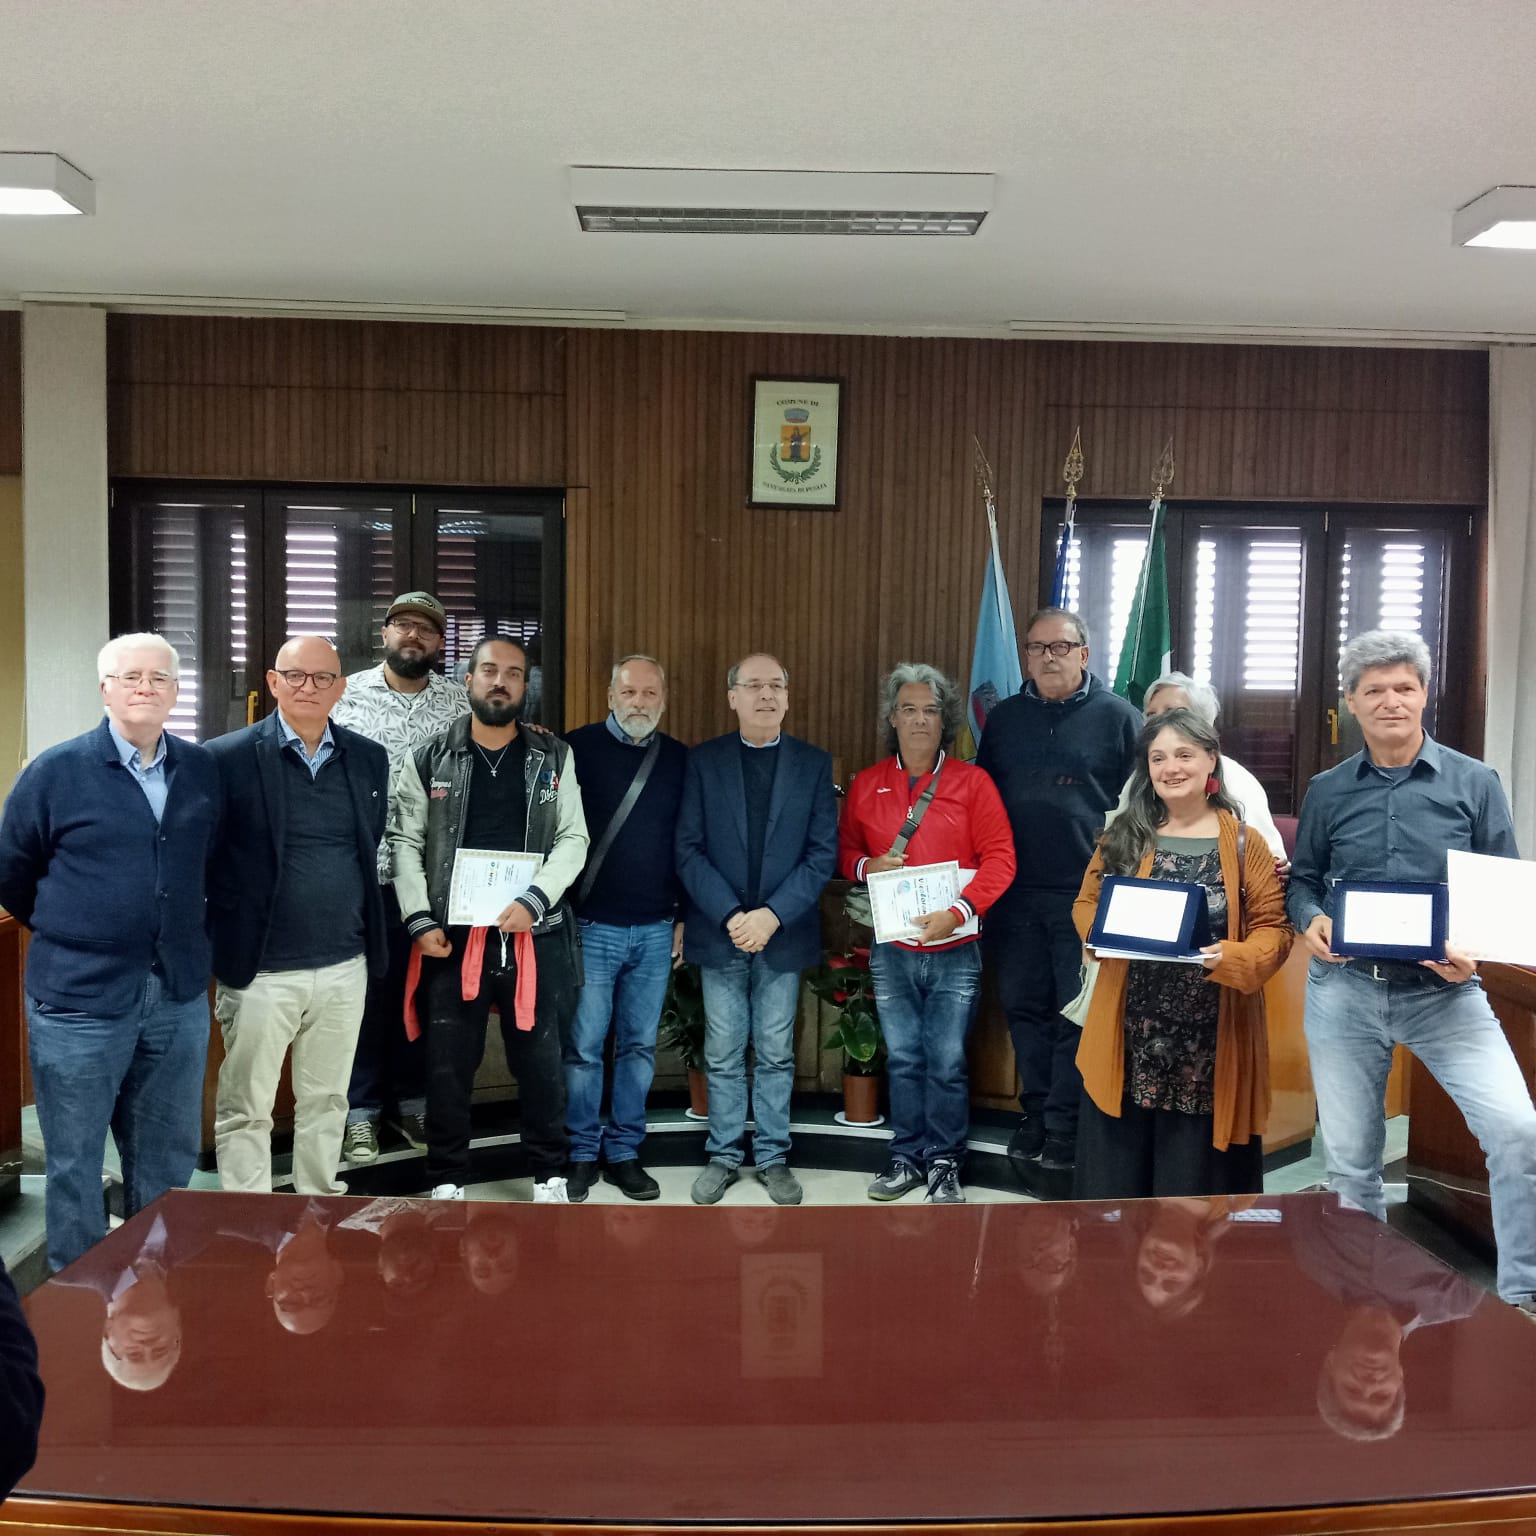 Tutti i premiati con i componenti della giuria, il Sindaco del Comune di Sant’Agata di Puglia, Pietro Bove e il Presidente della Pro Loco Gerardo Lionetti.